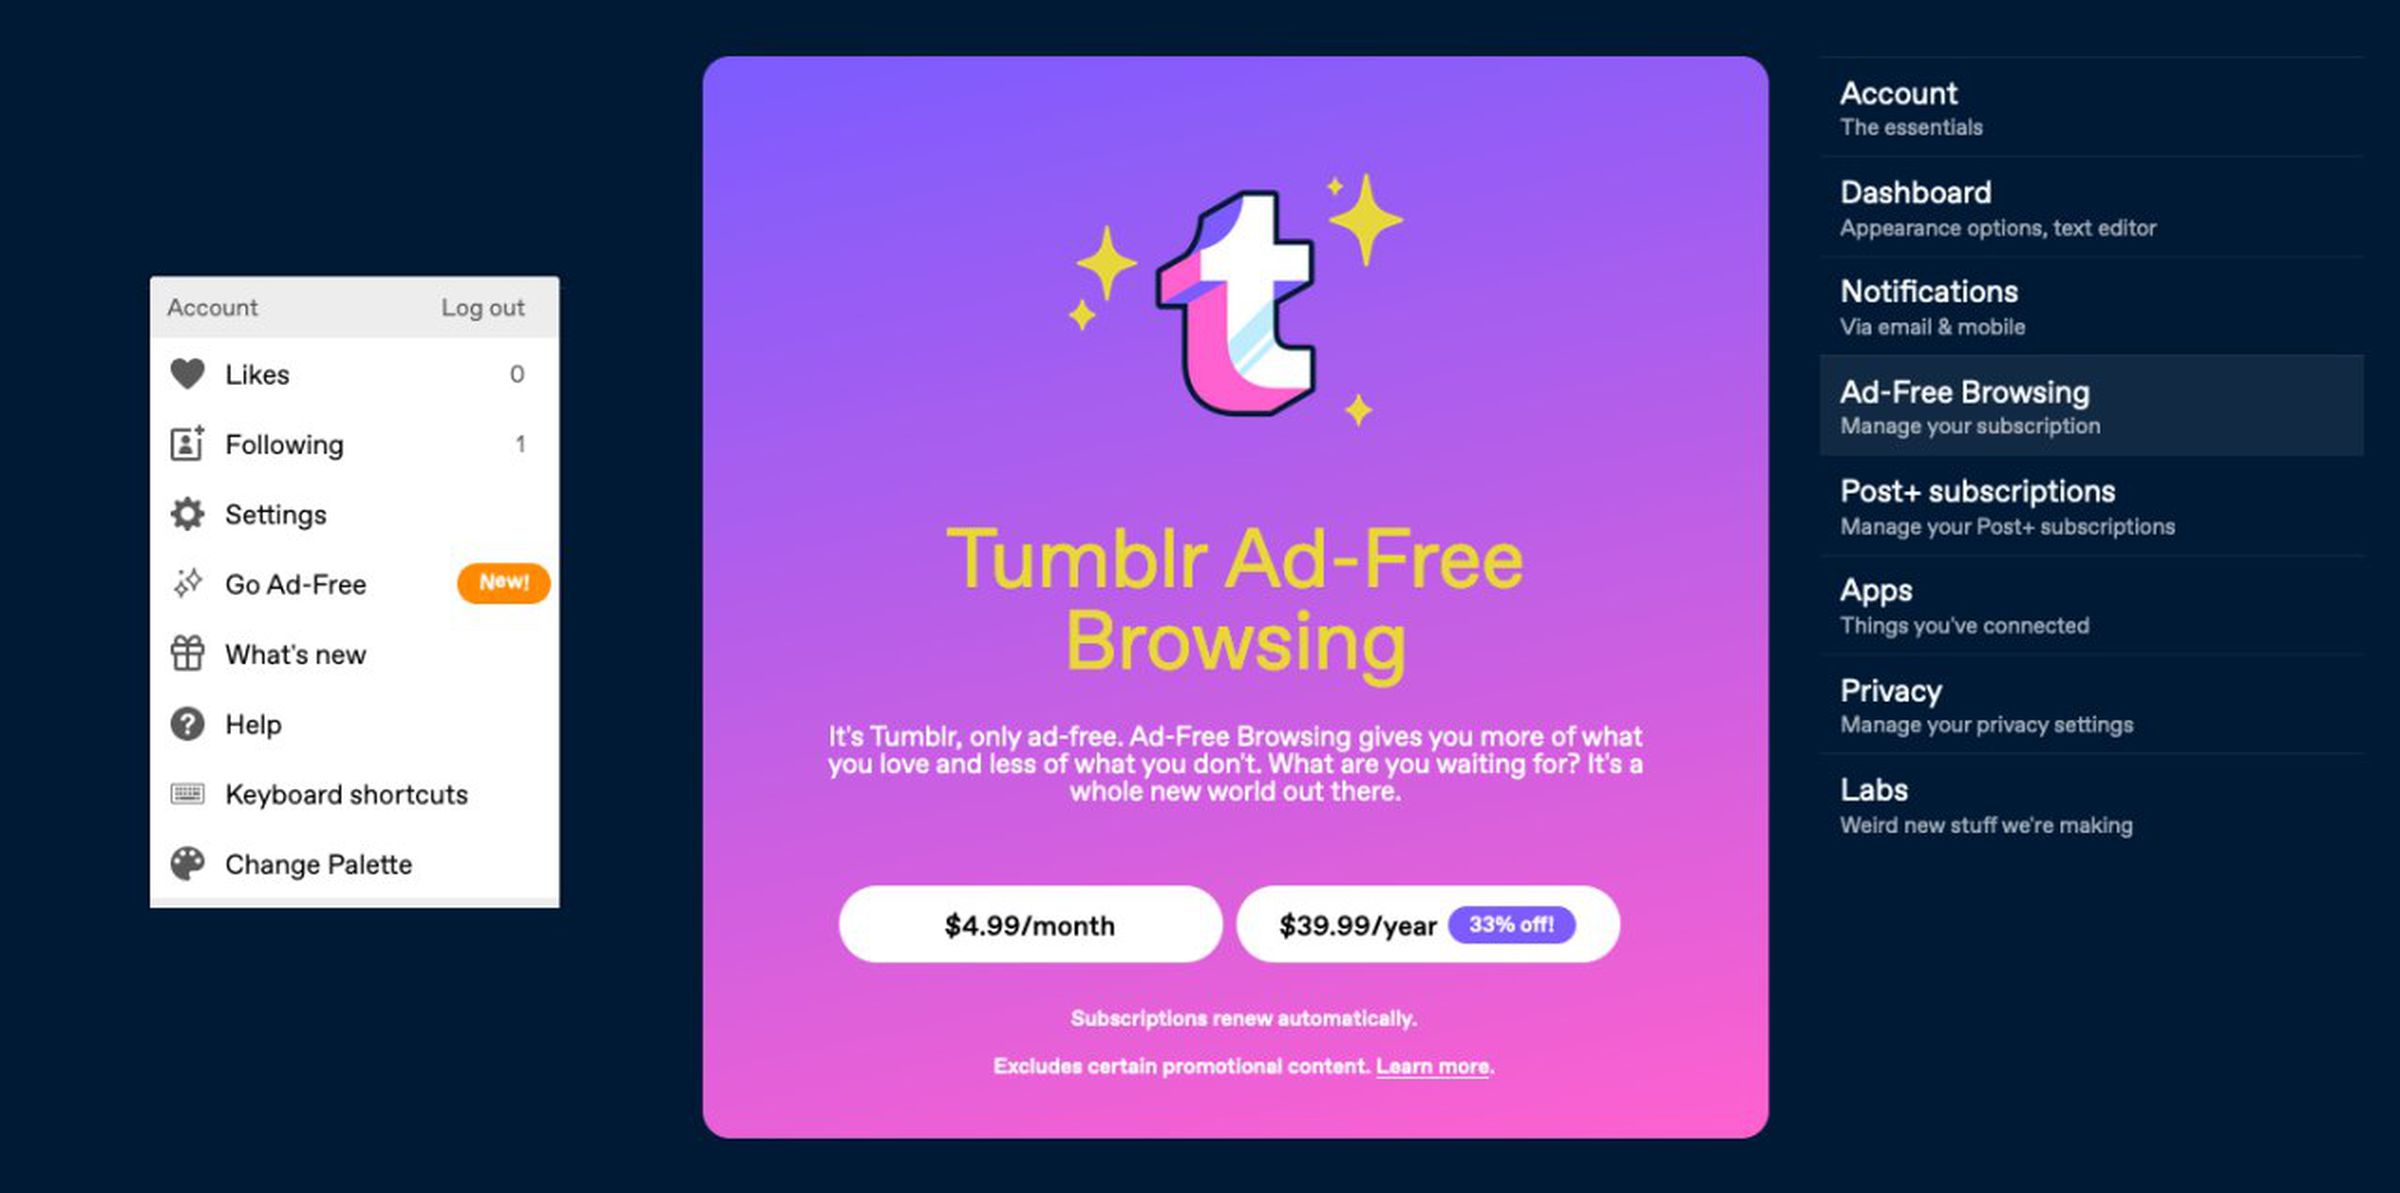 Tumblr Ad-Free browsing details